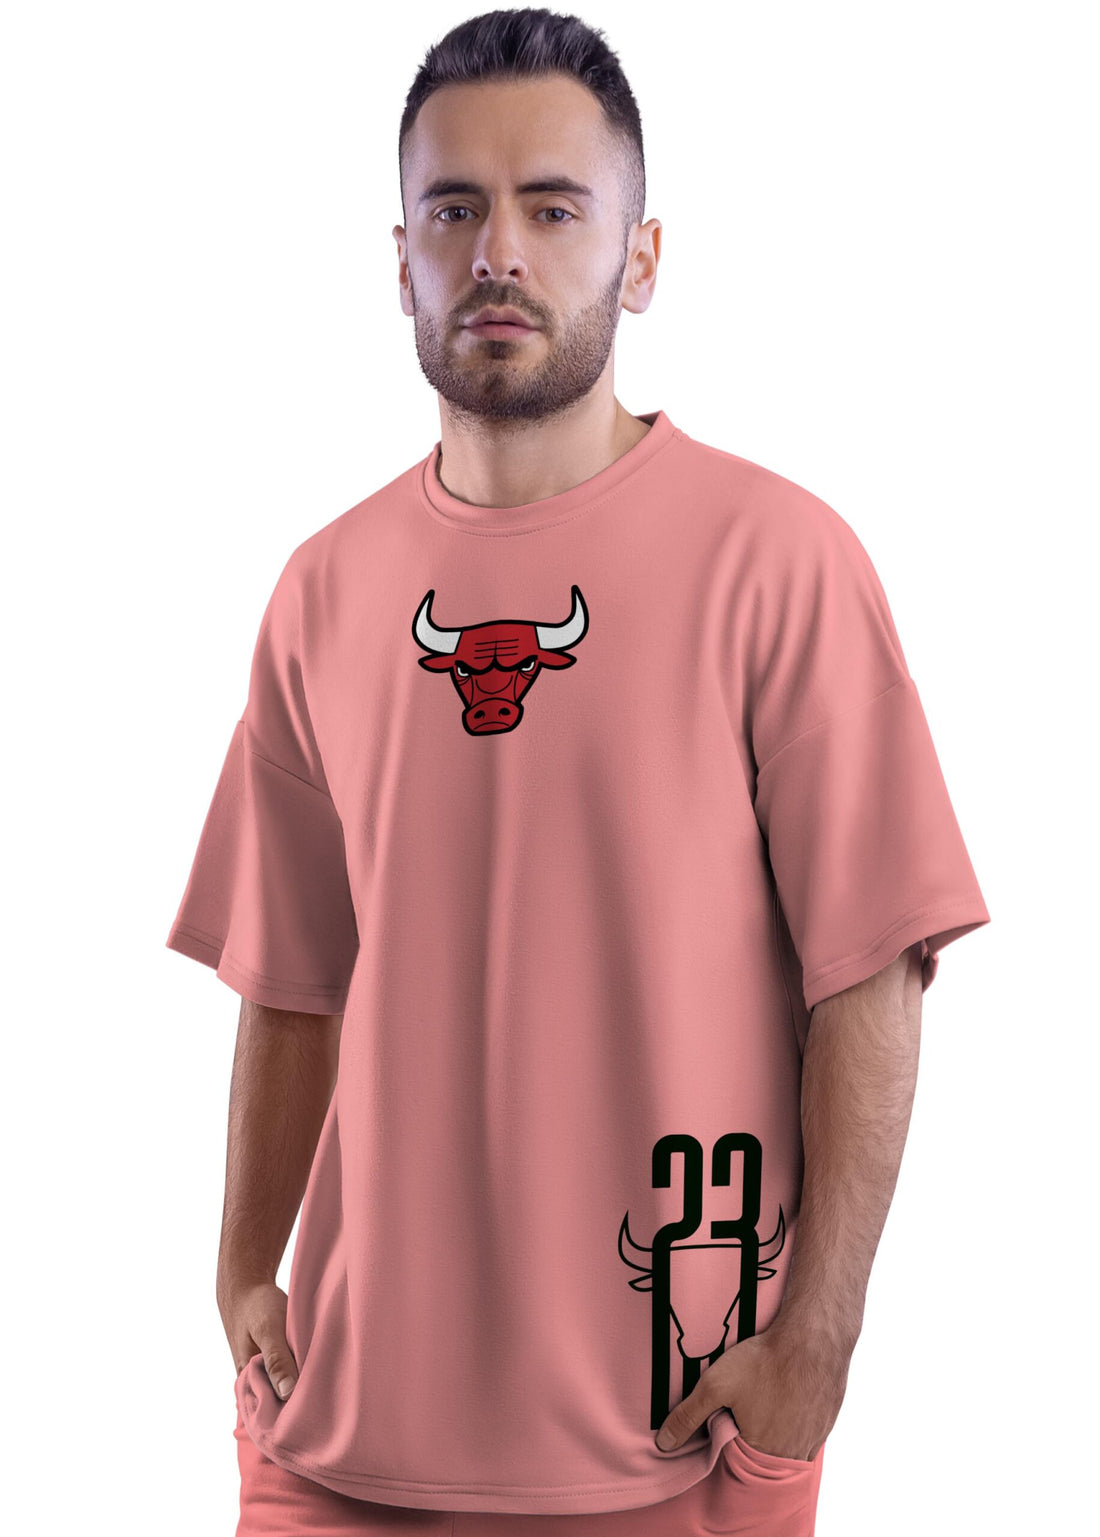 Chicago Bulls Oversized T-Shirt